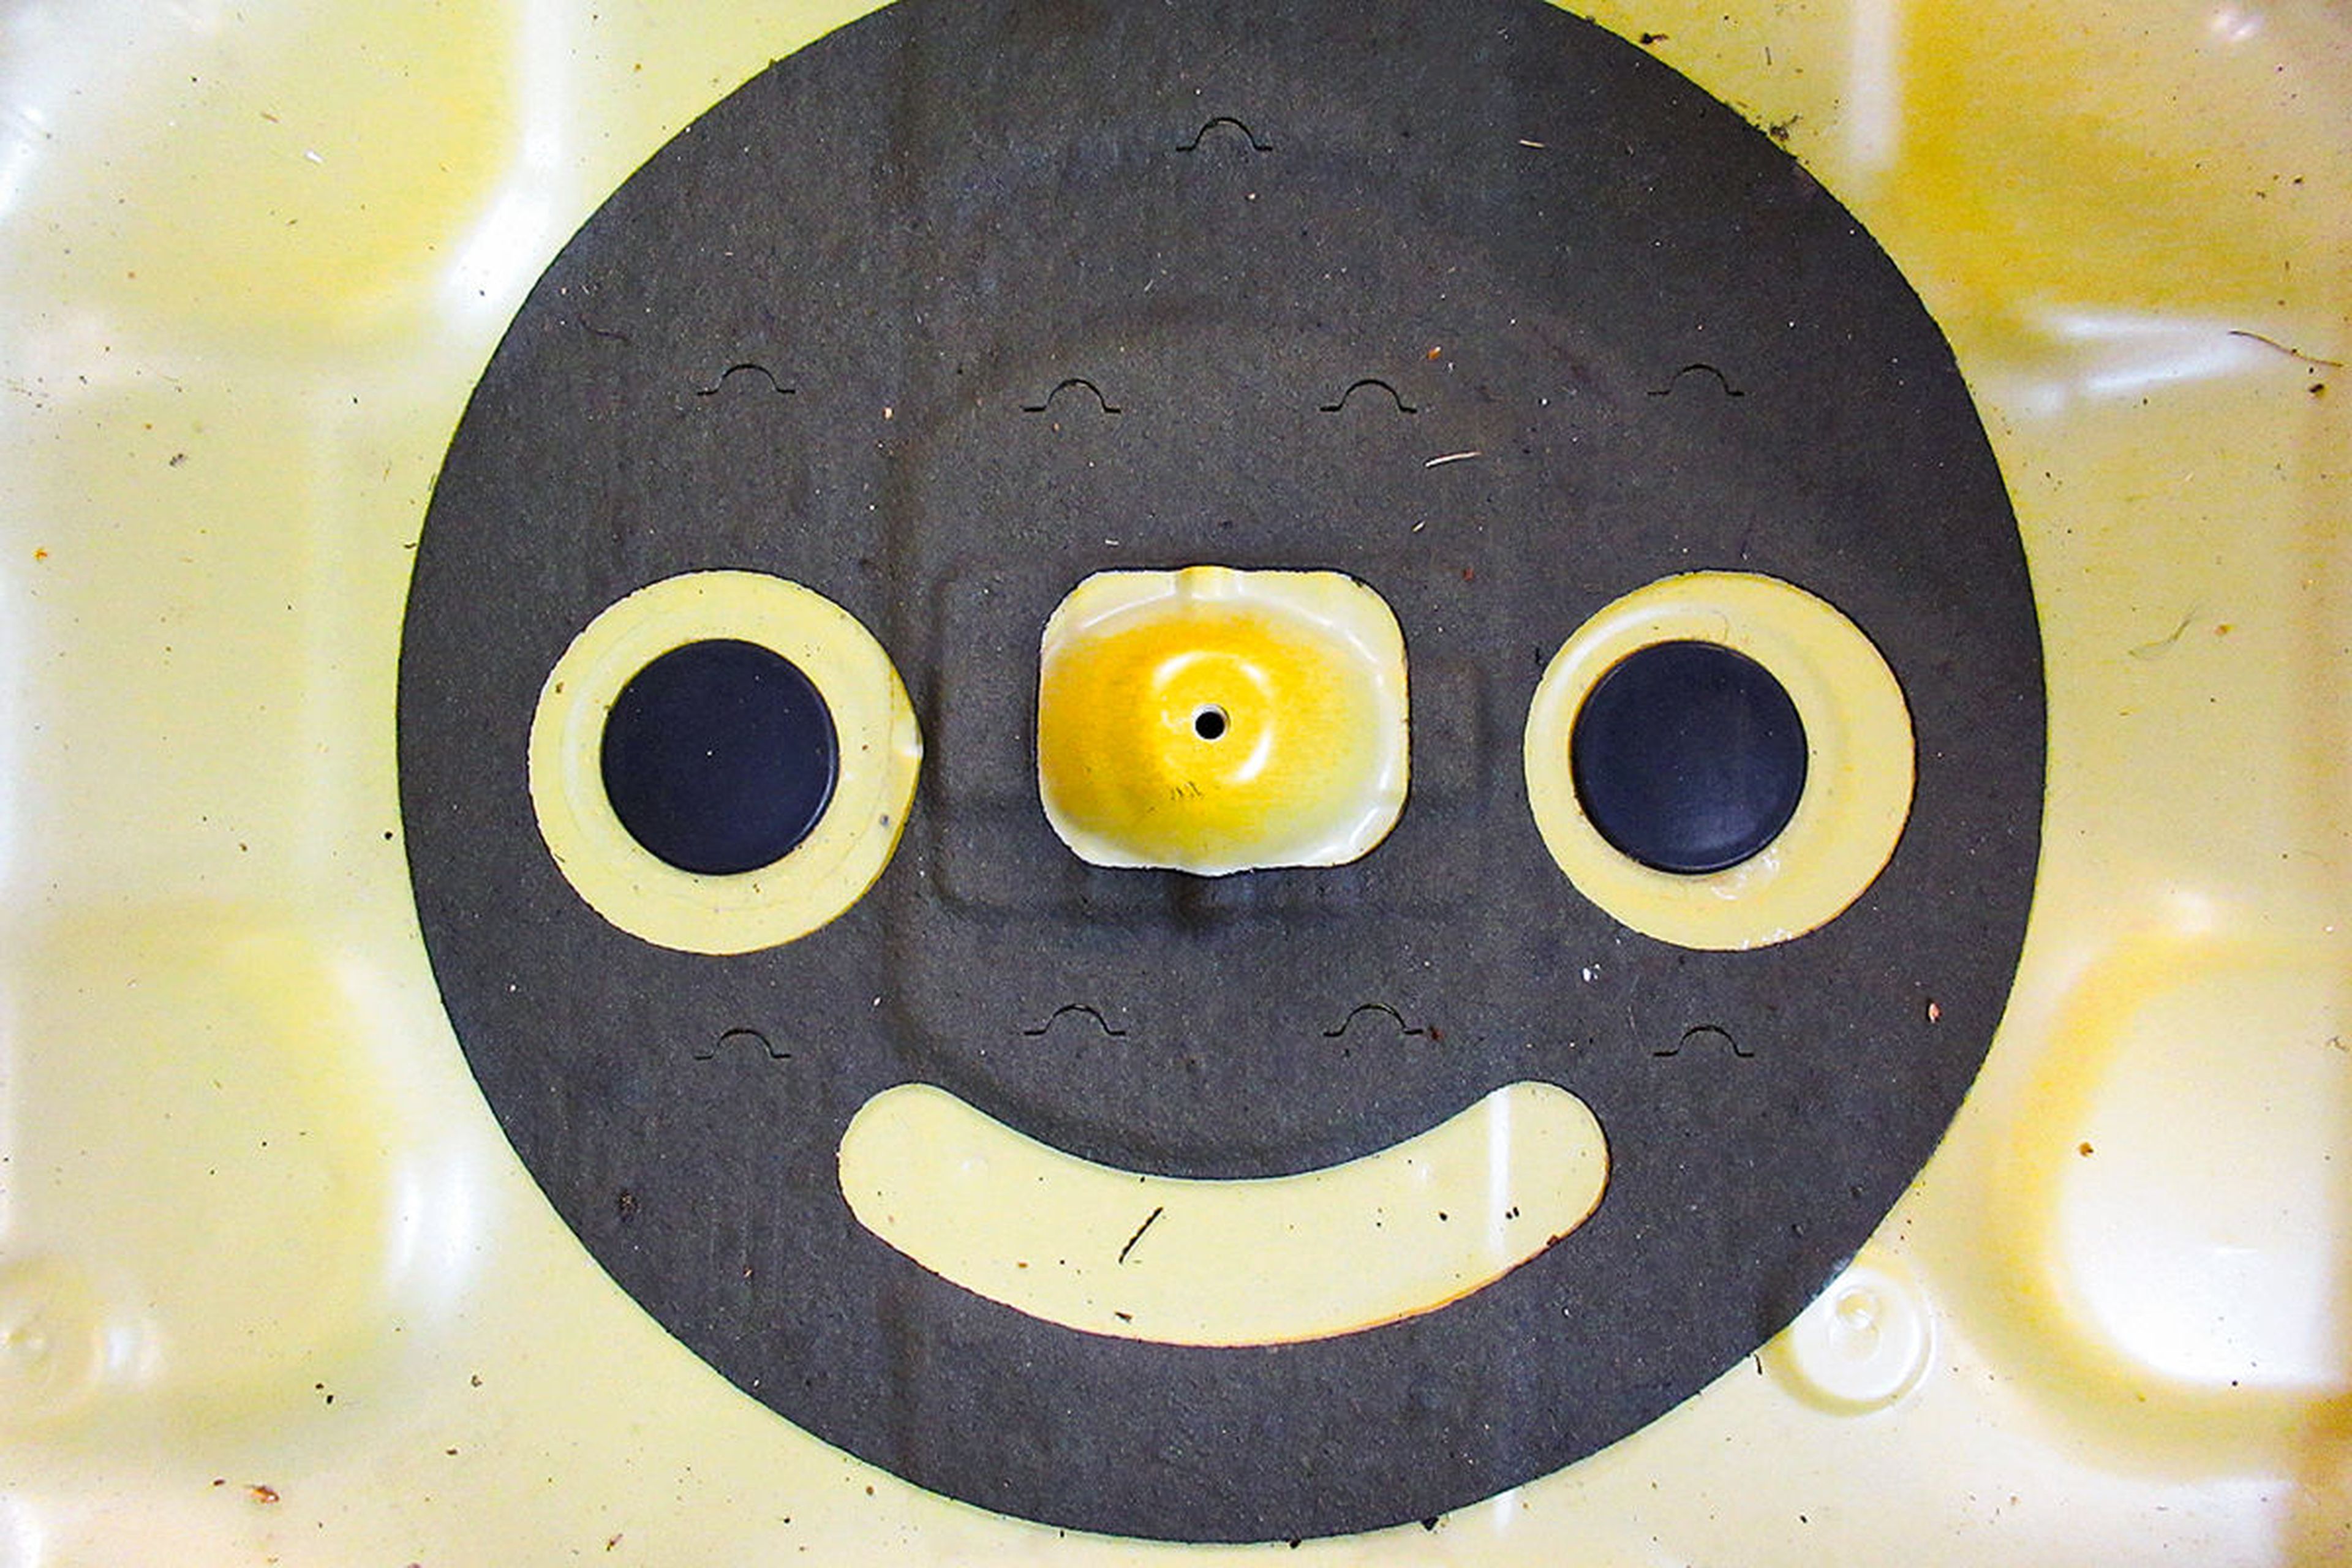 Humor coreano: el material aislante del compartimento de la rueda de repuesto te sonríe